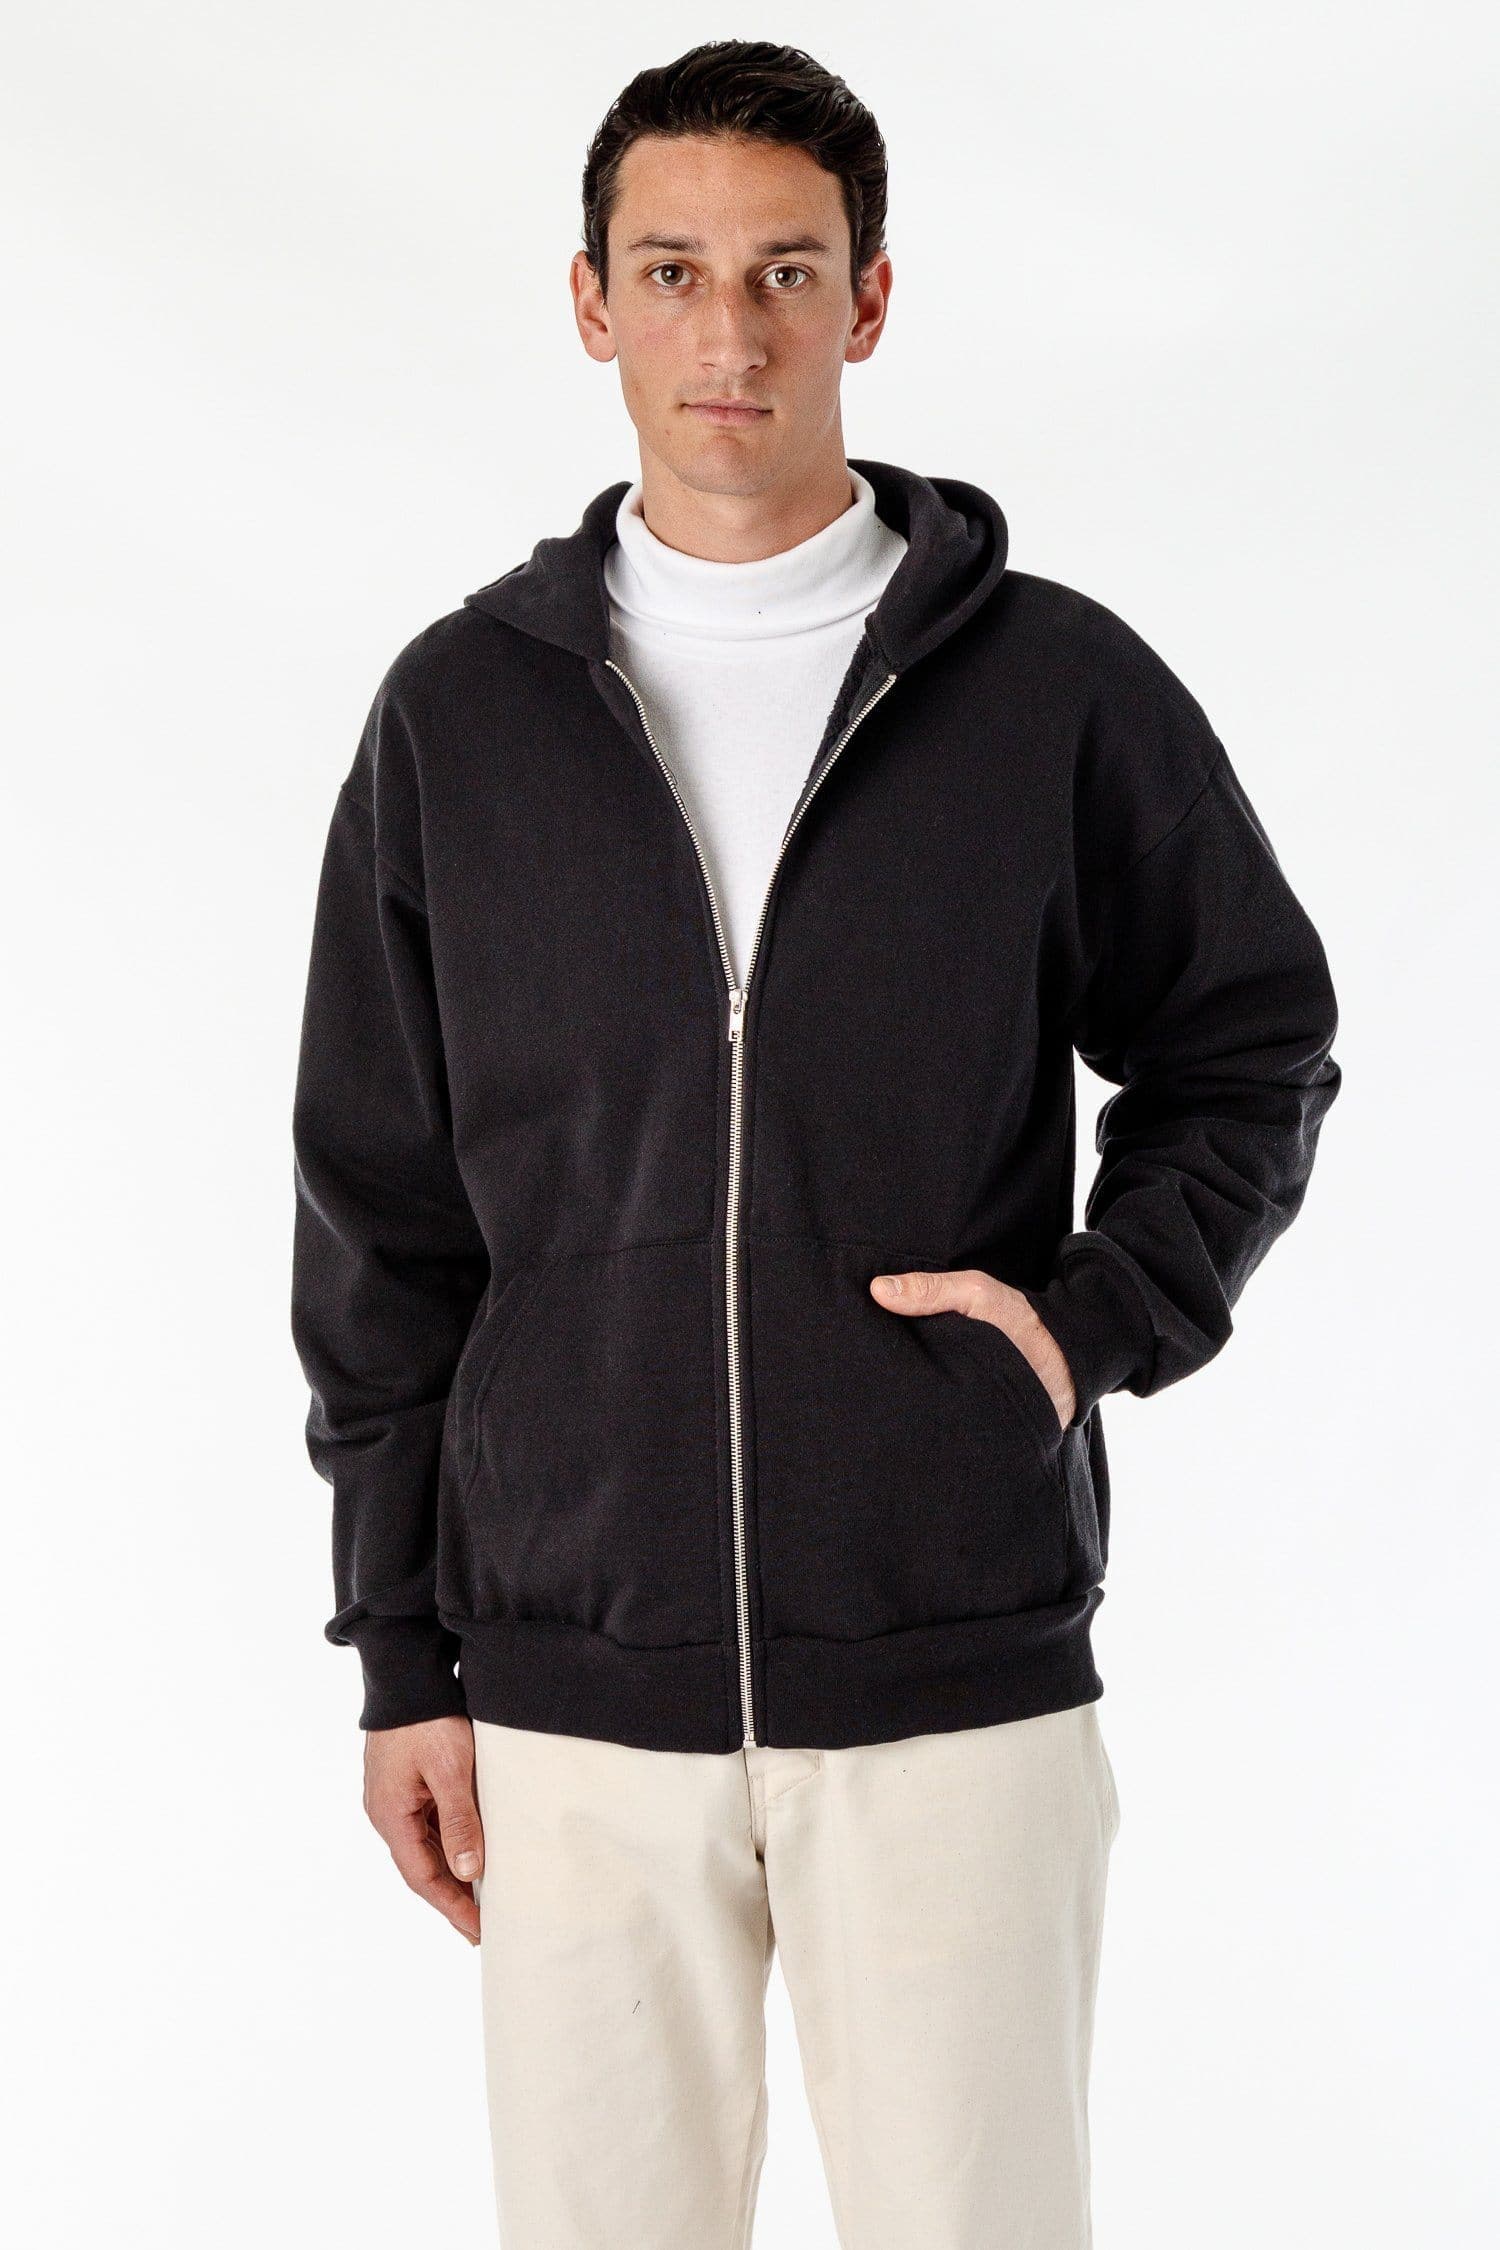 Bulk-buy Full Zip Hoodies 100% Polyester Plush Fabric Kangaroo Pocket Men  Winter Hoodie Polar Fleece Clothing price comparison